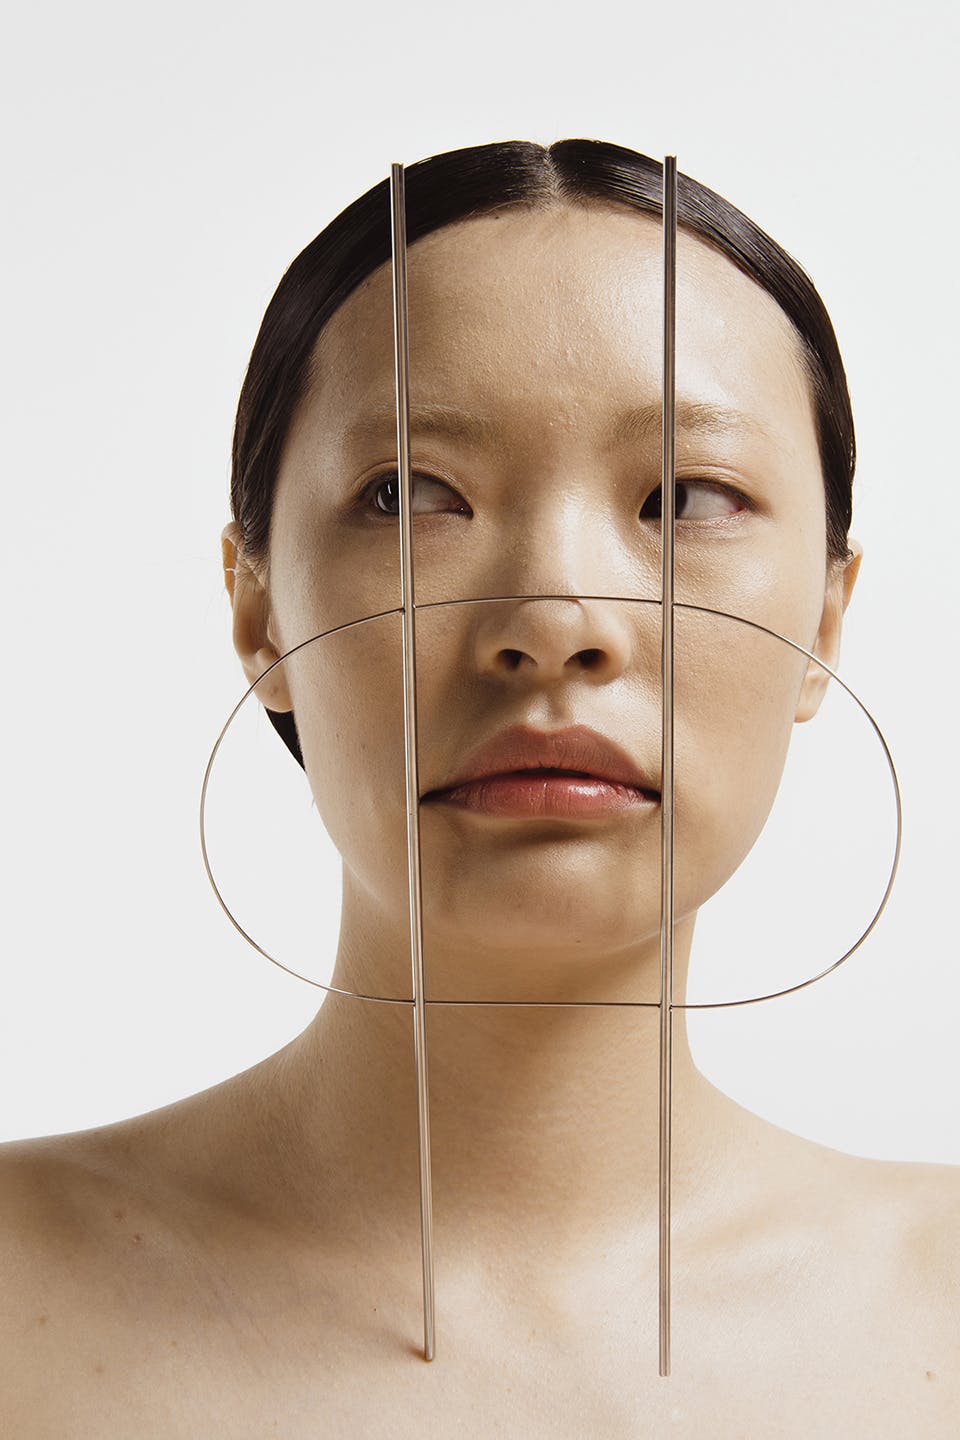 2. Zhilu Cheng - Facewear, Looking Inwards by Looking Outwards, 2016. Steel